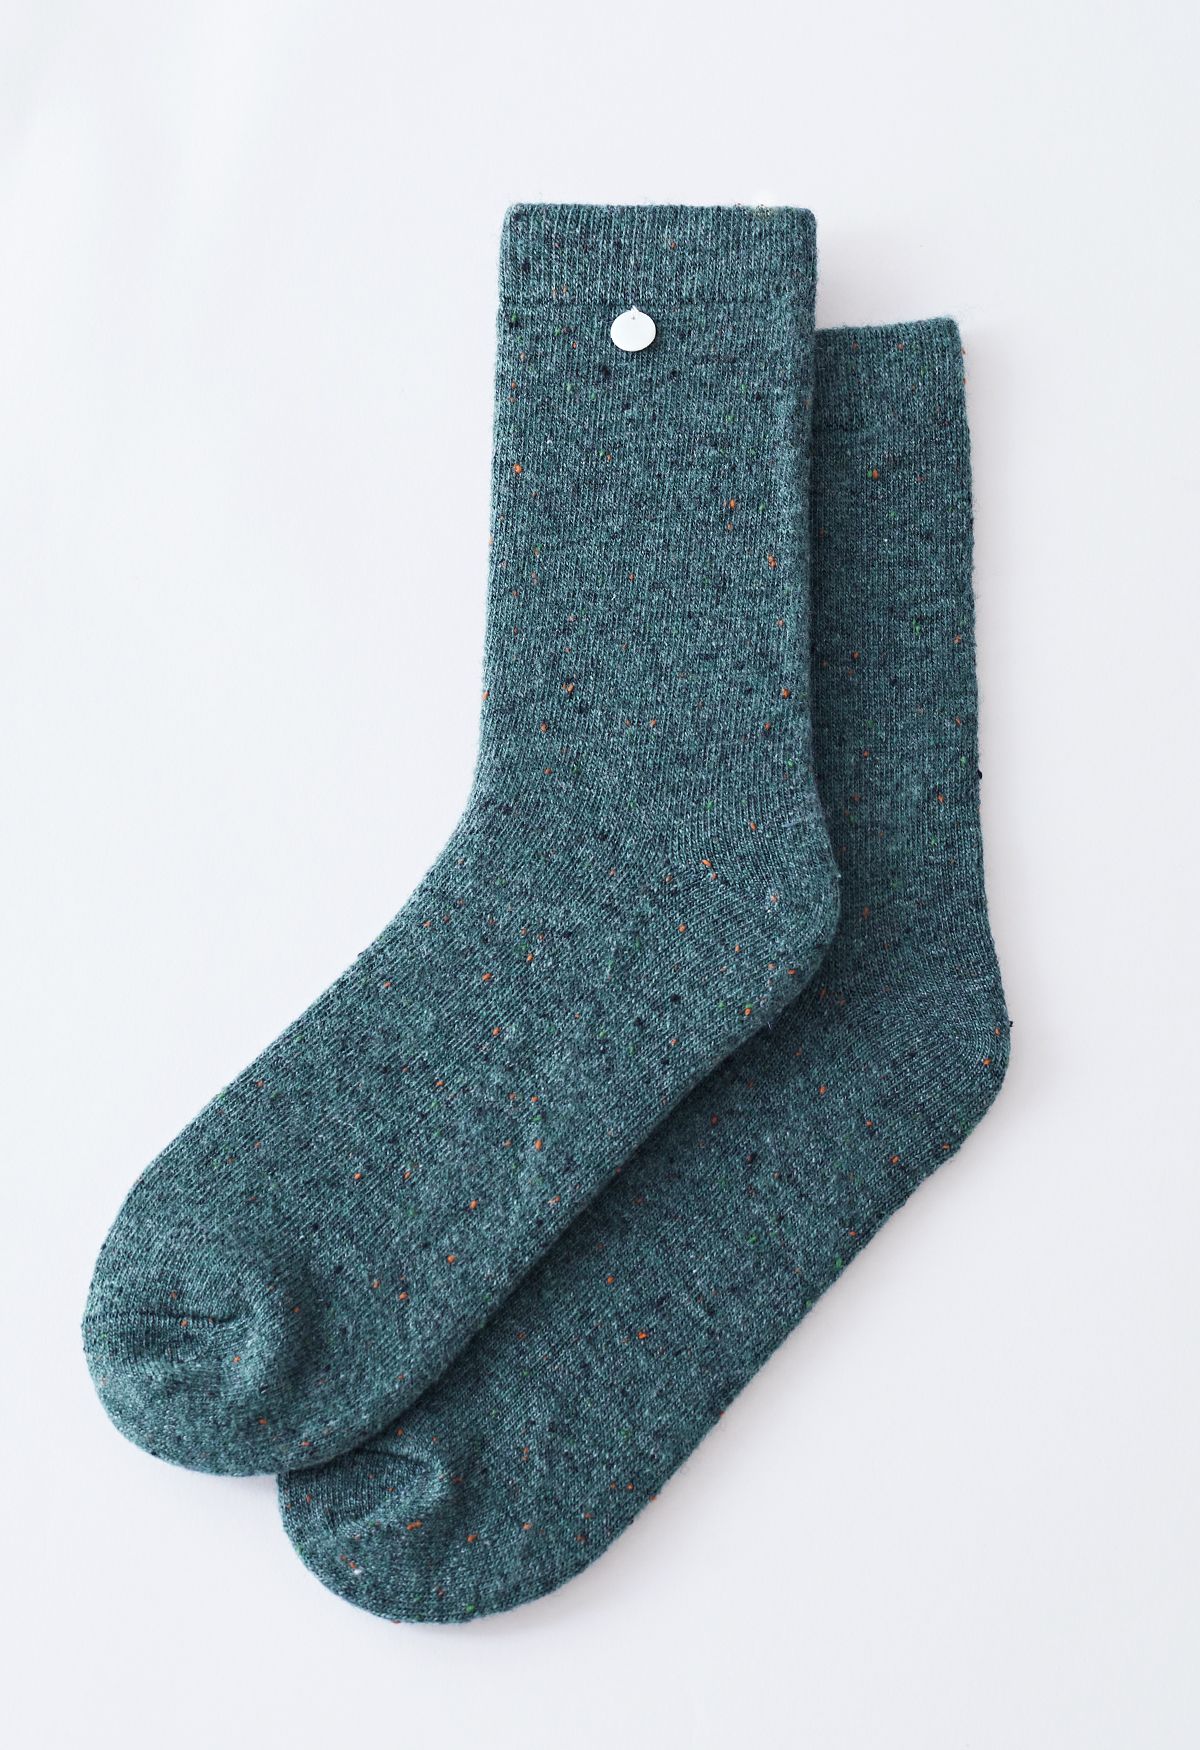 Chaussettes mi-mollet en laine mélangée à pois multicolores en turquoise